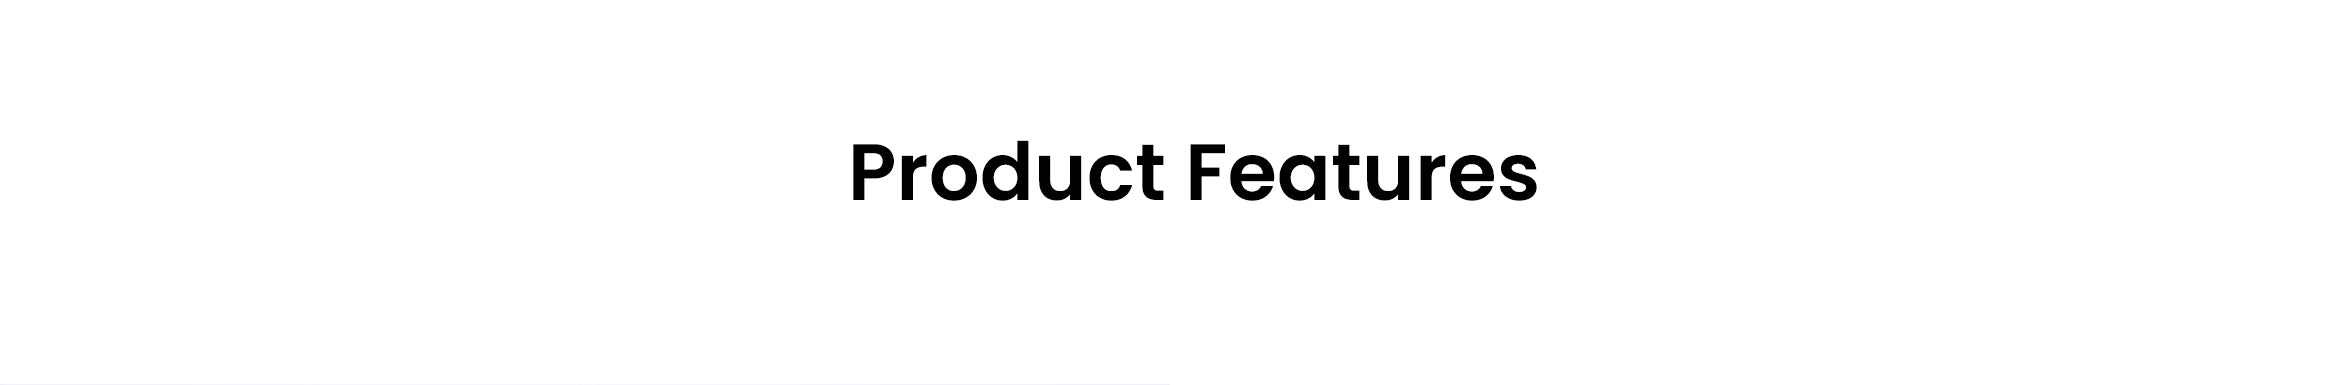 Doorek Product Features